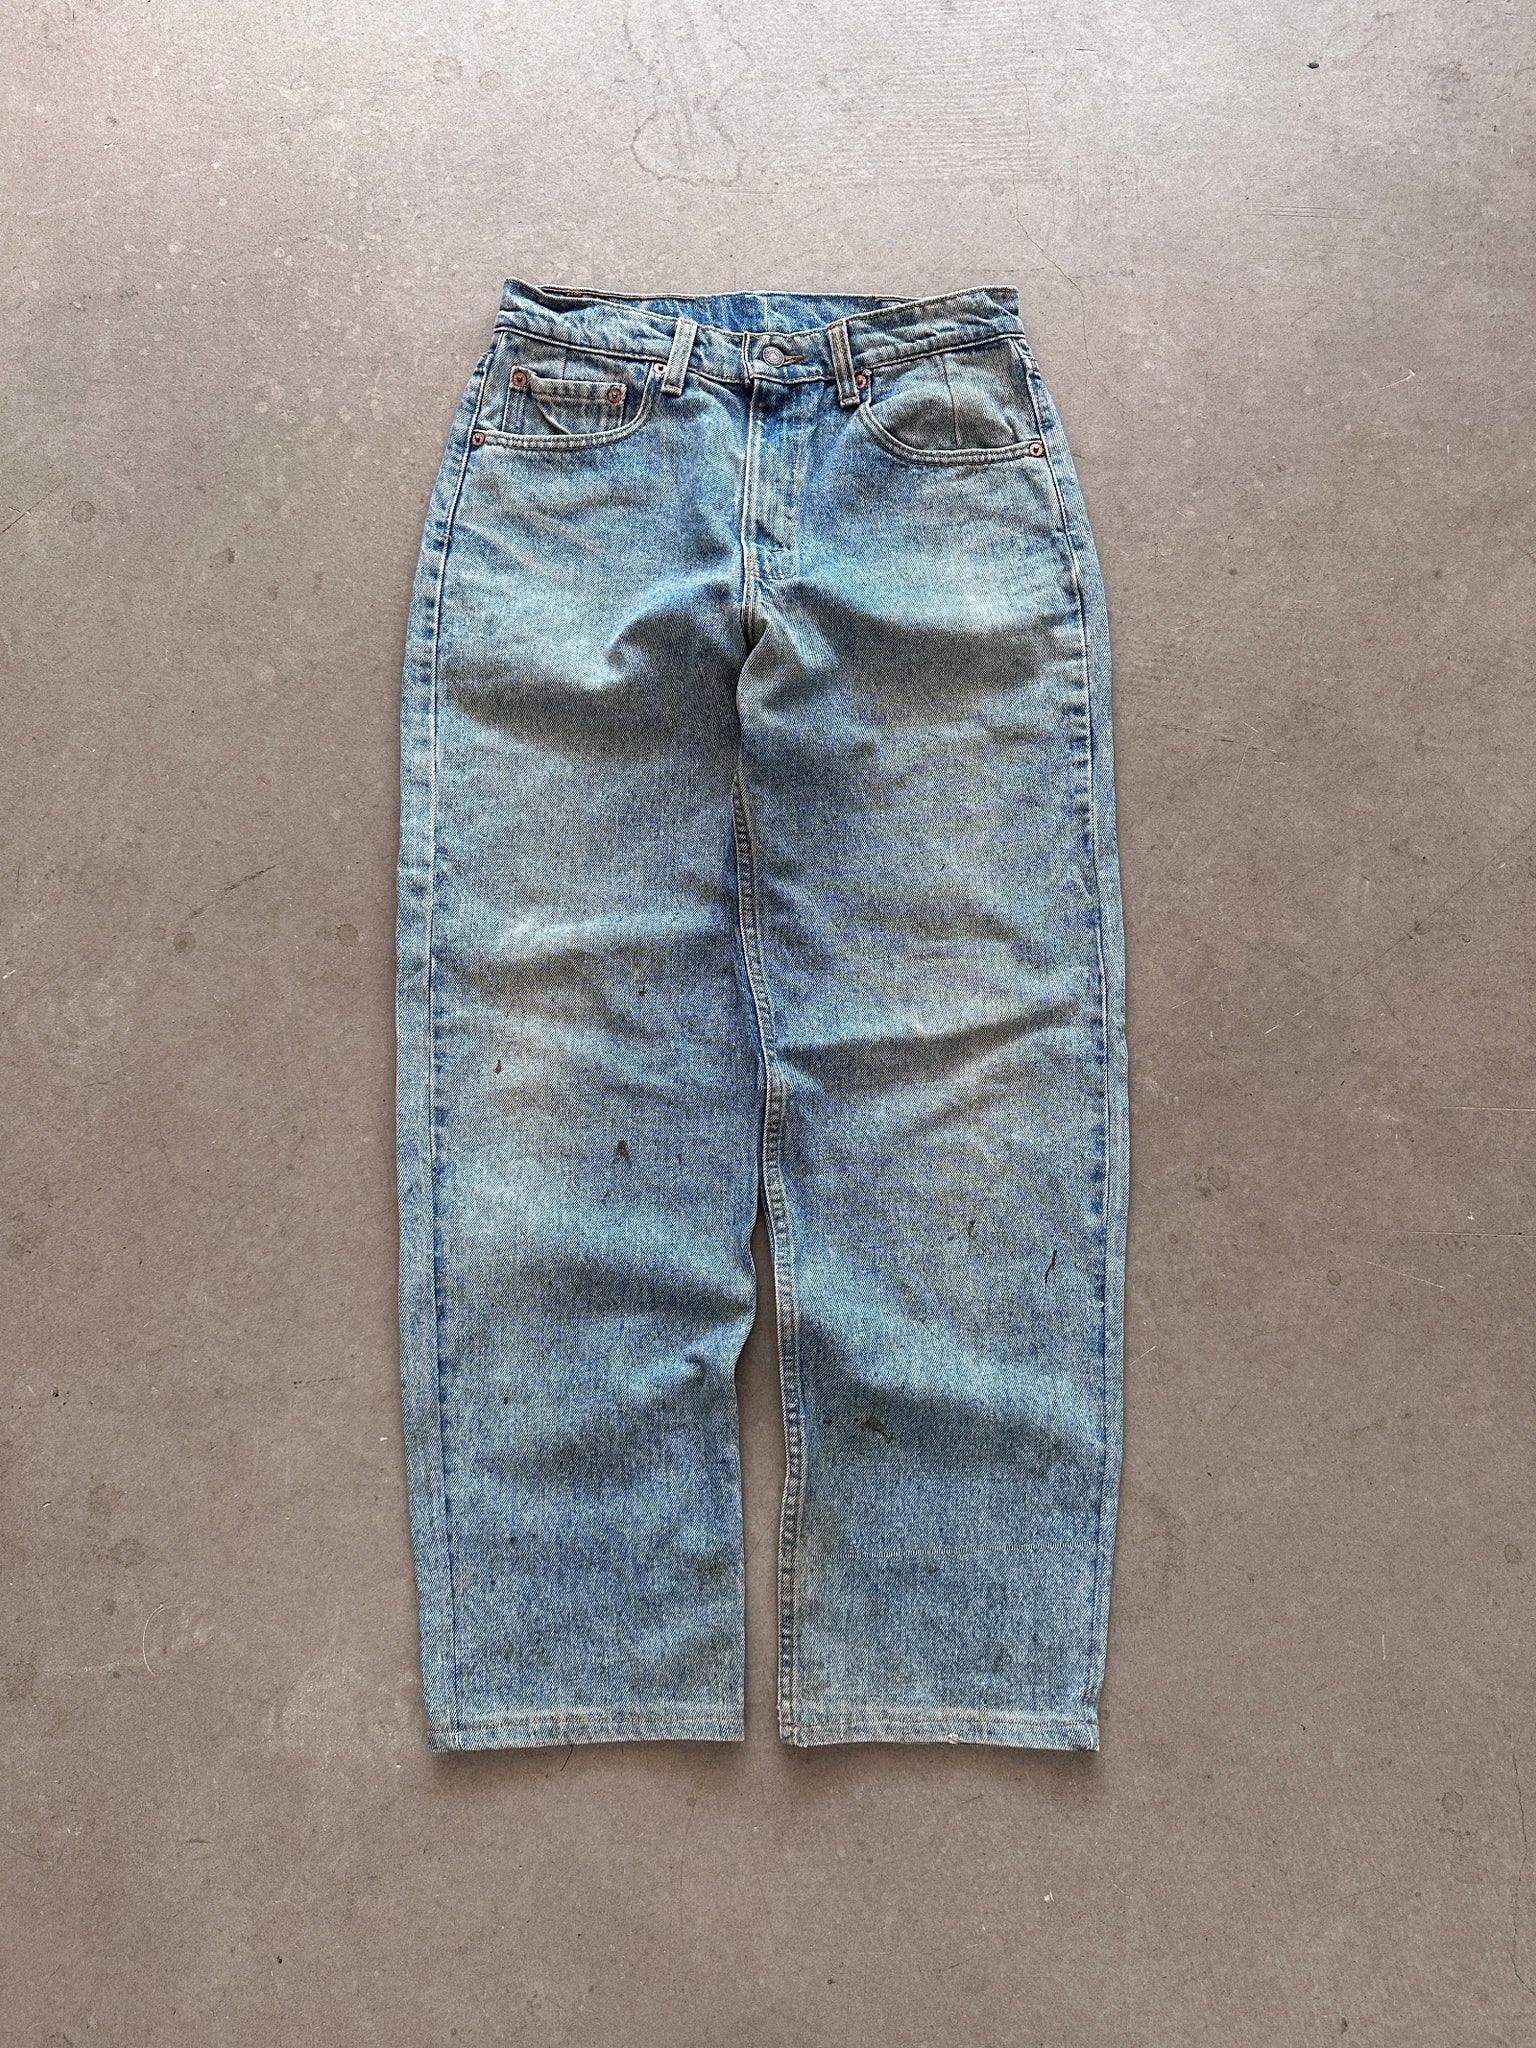 1996 Levi's 555 Jeans - 30 x 31